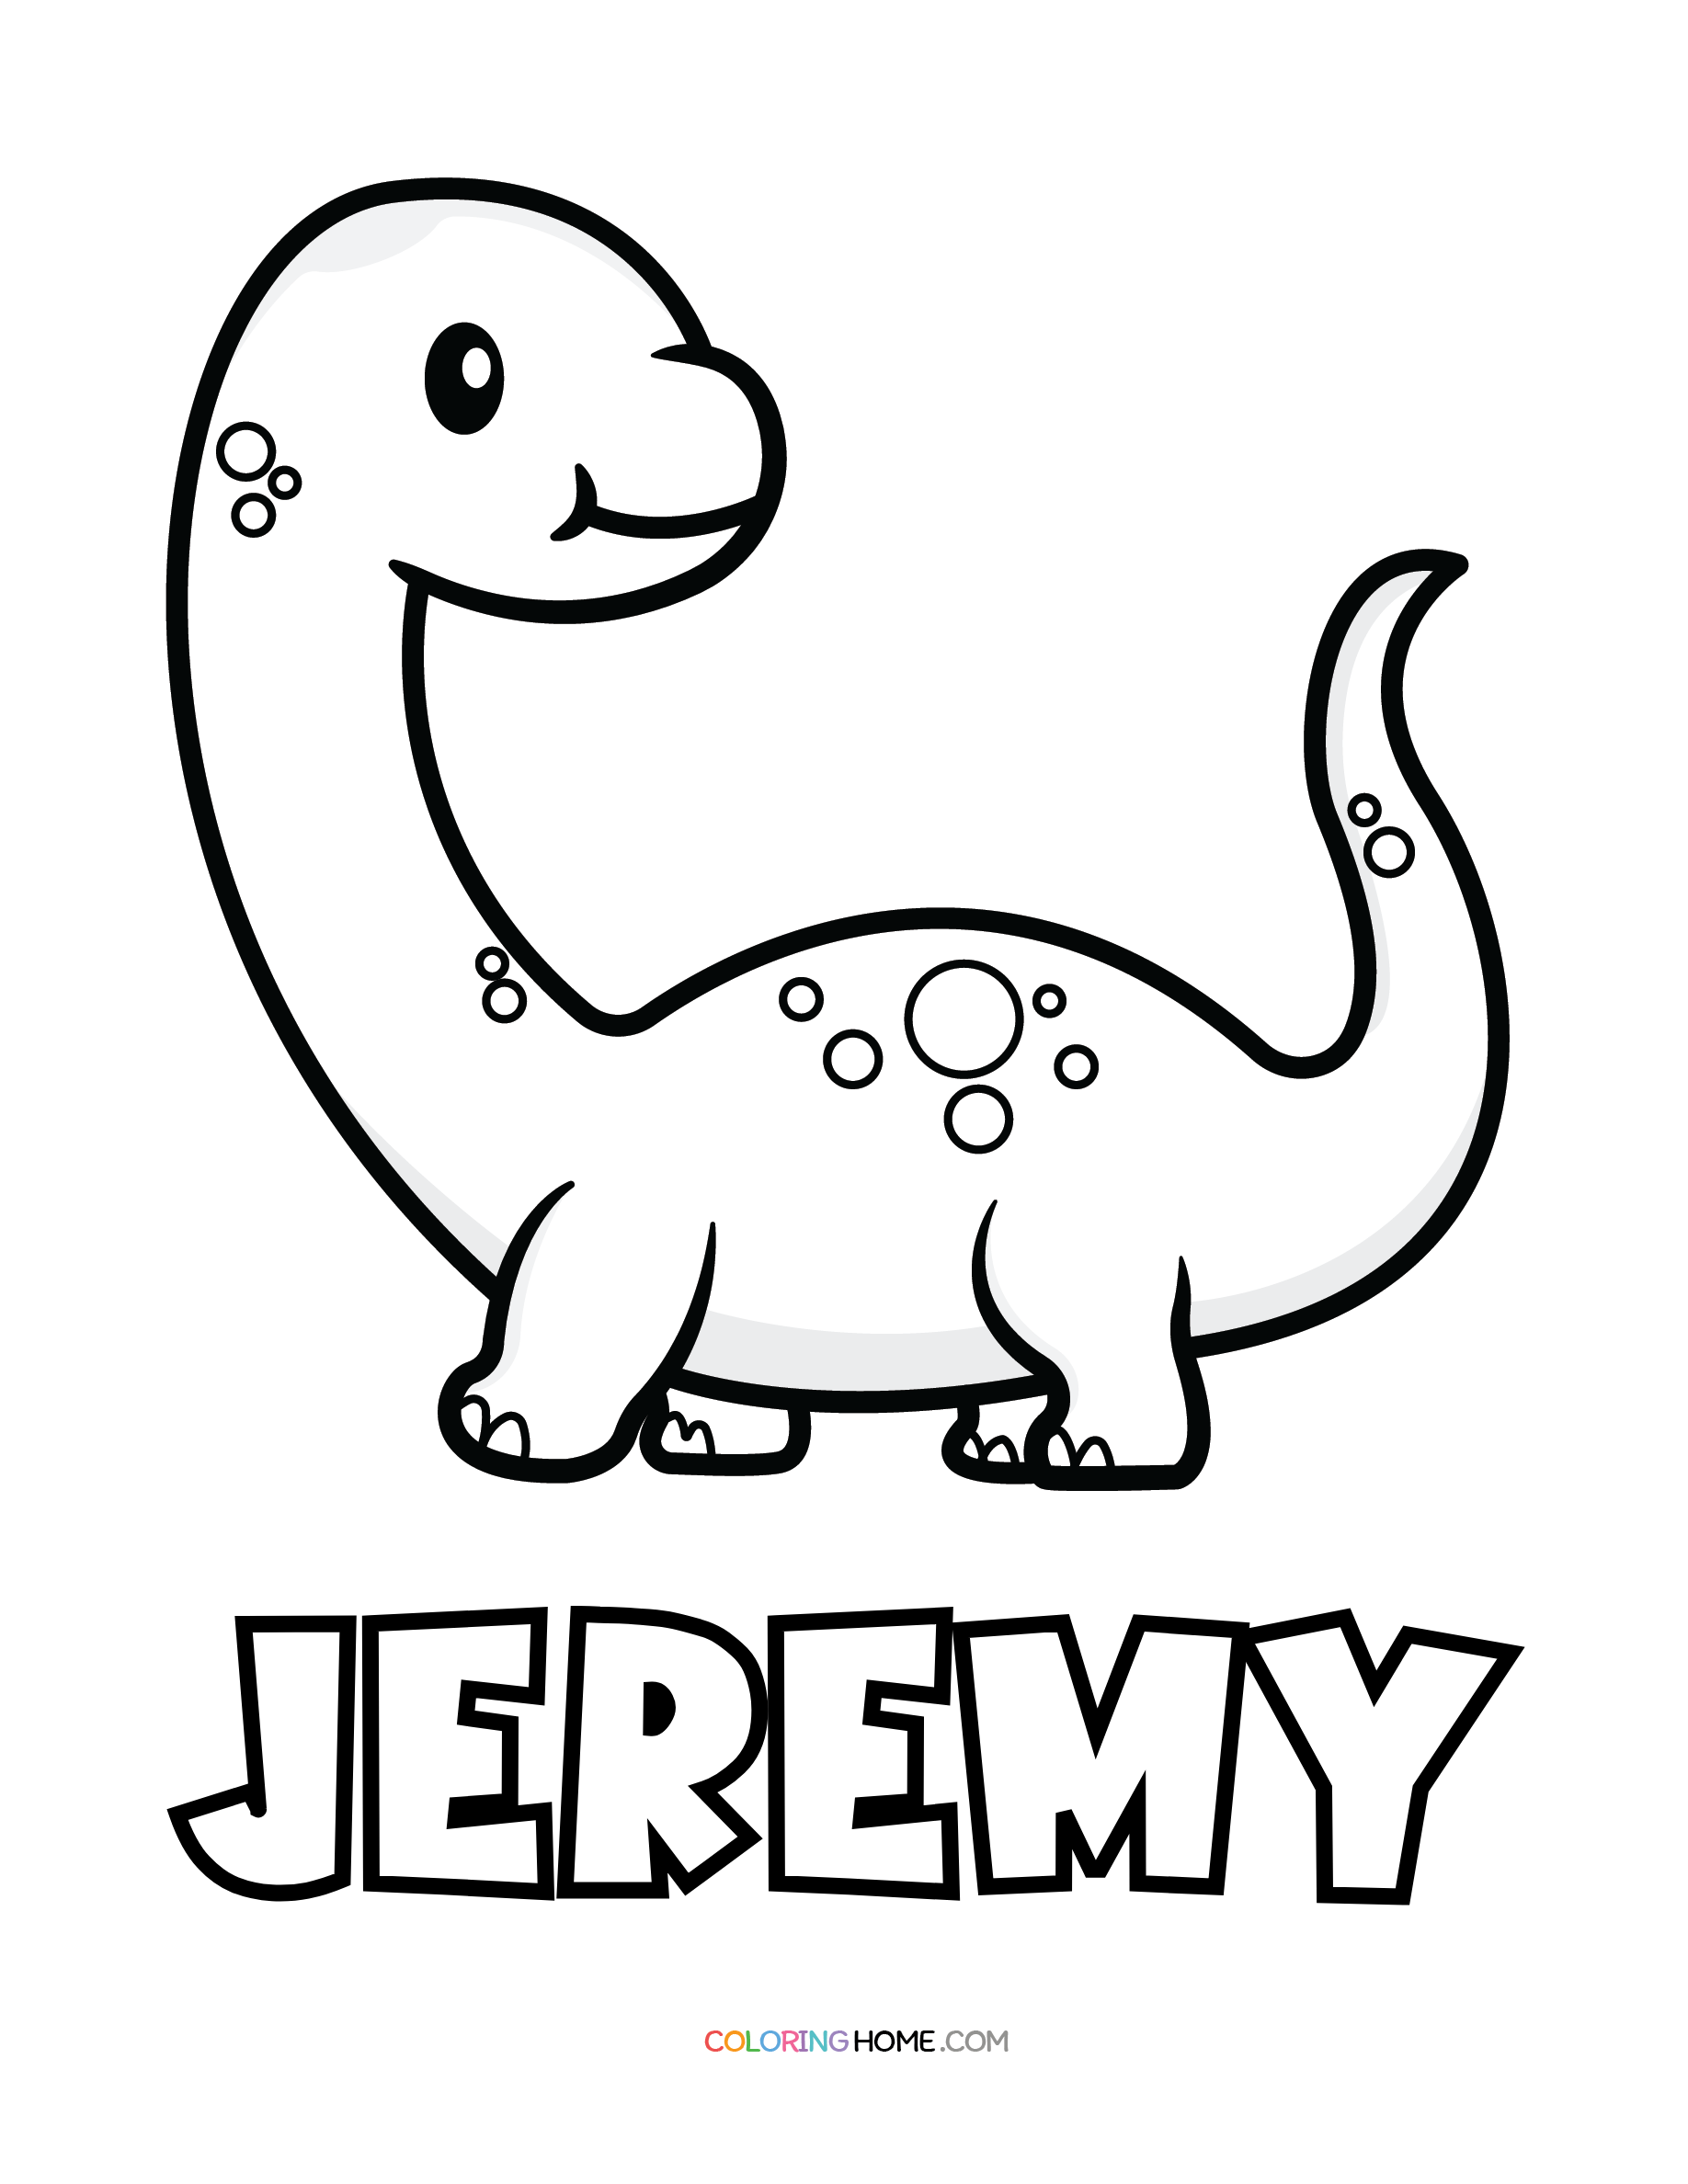 Jeremy dinosaur coloring page